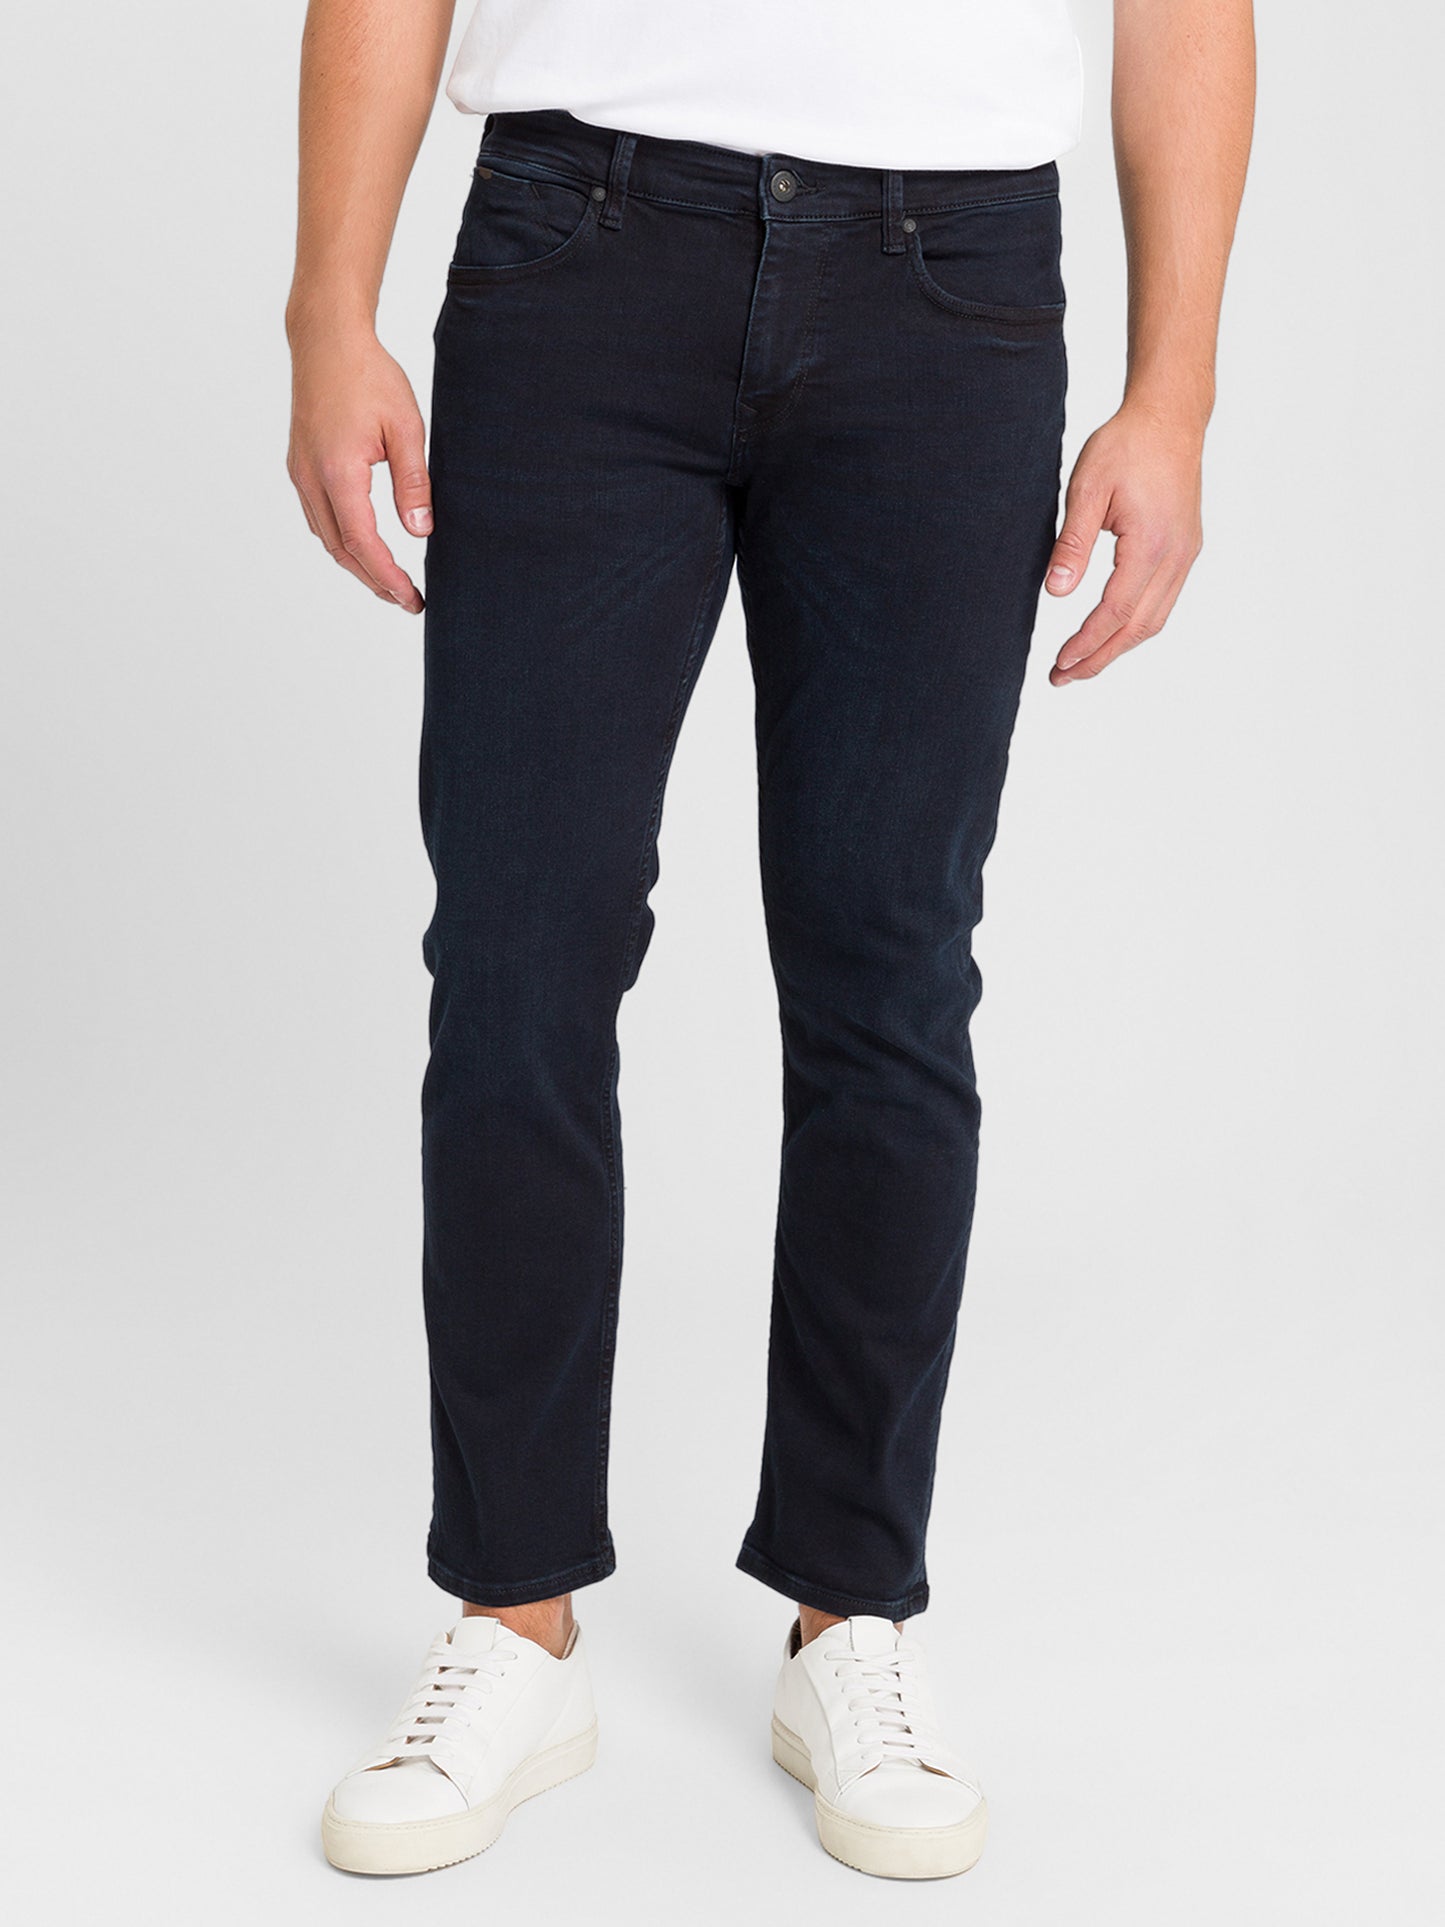 Dylan Men's Regular Fit Regular Waist Straight Leg Jeans Black Blue